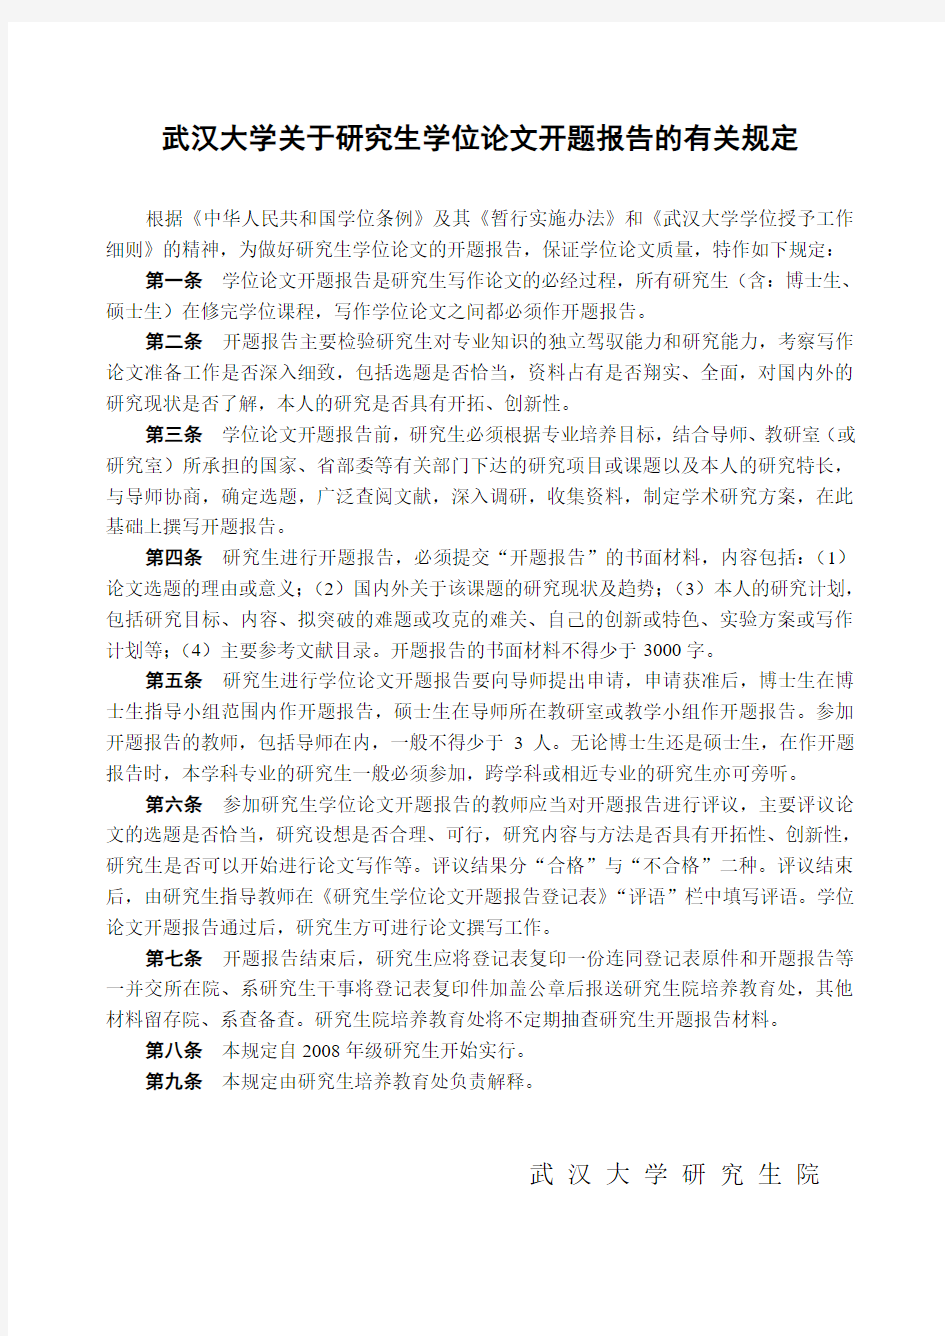 武汉大学开题报告登记表